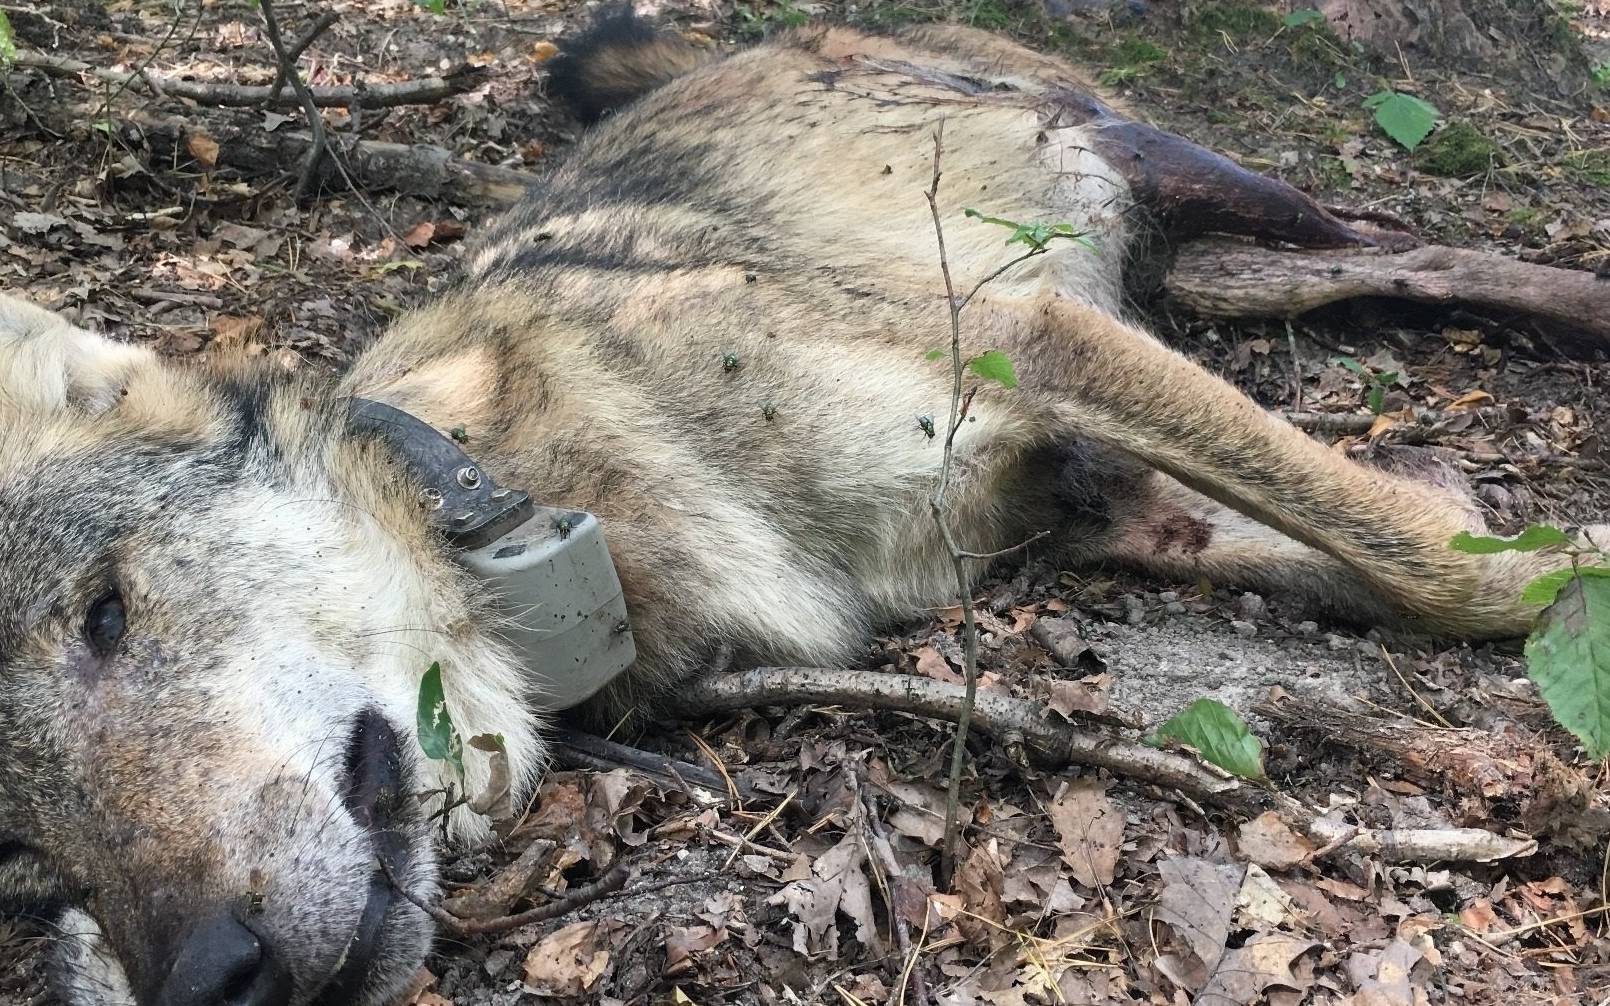 Grafika do artykułu Myśliwi zabili dwa wilki. Jeden osierocił szczenięta. "Nie sądzę, by to była pomyłka"